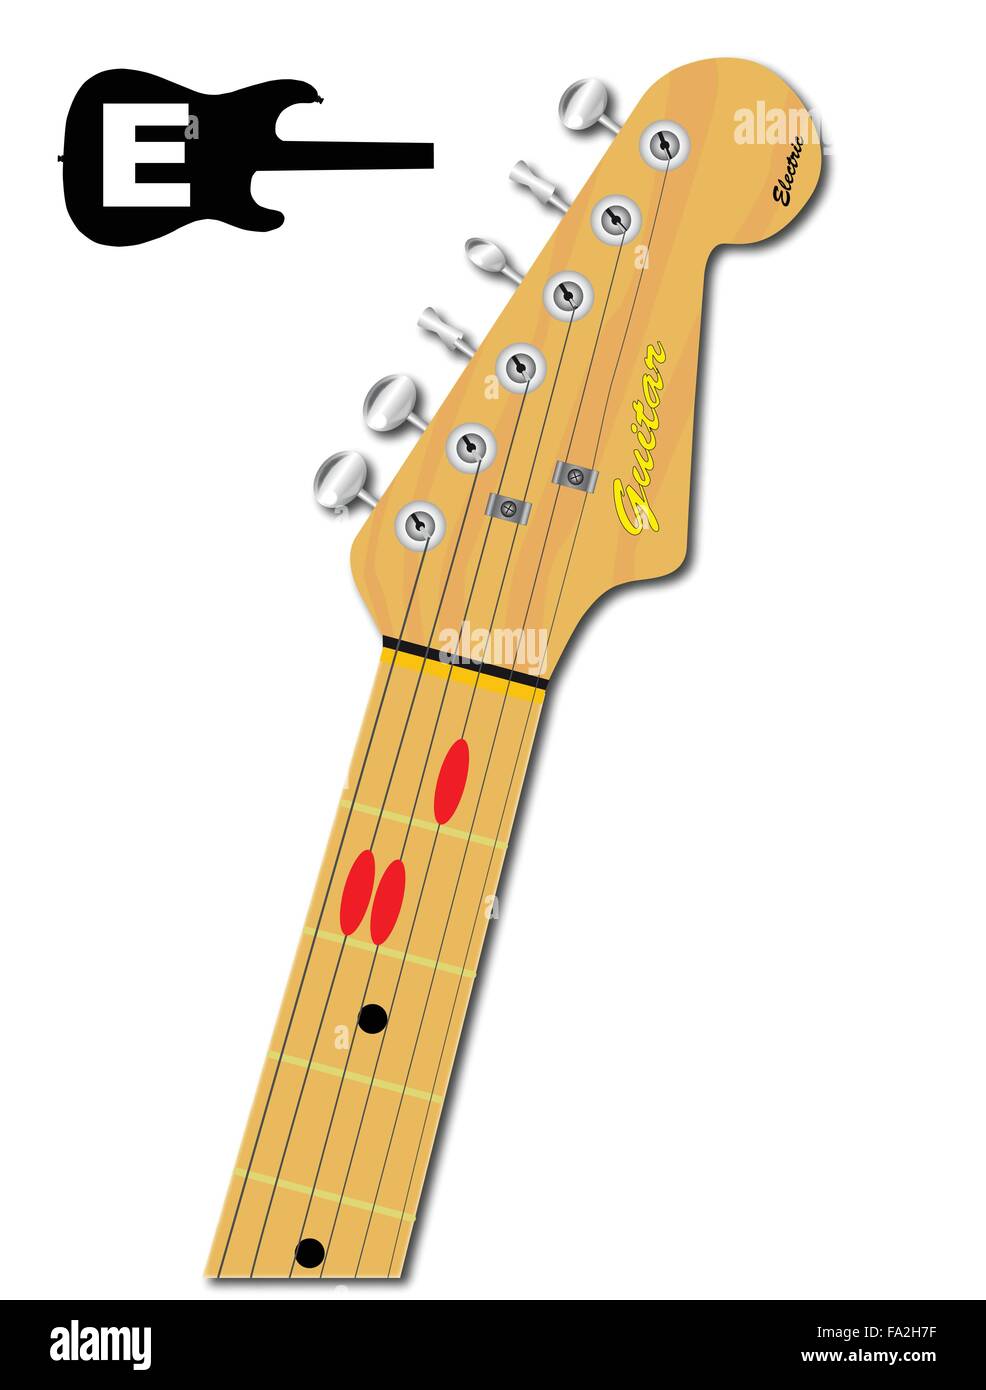 Una chitarra elettrica del collo con la conformazione a corda di circonferenza per e principali indicati con pulsanti rossi Illustrazione Vettoriale